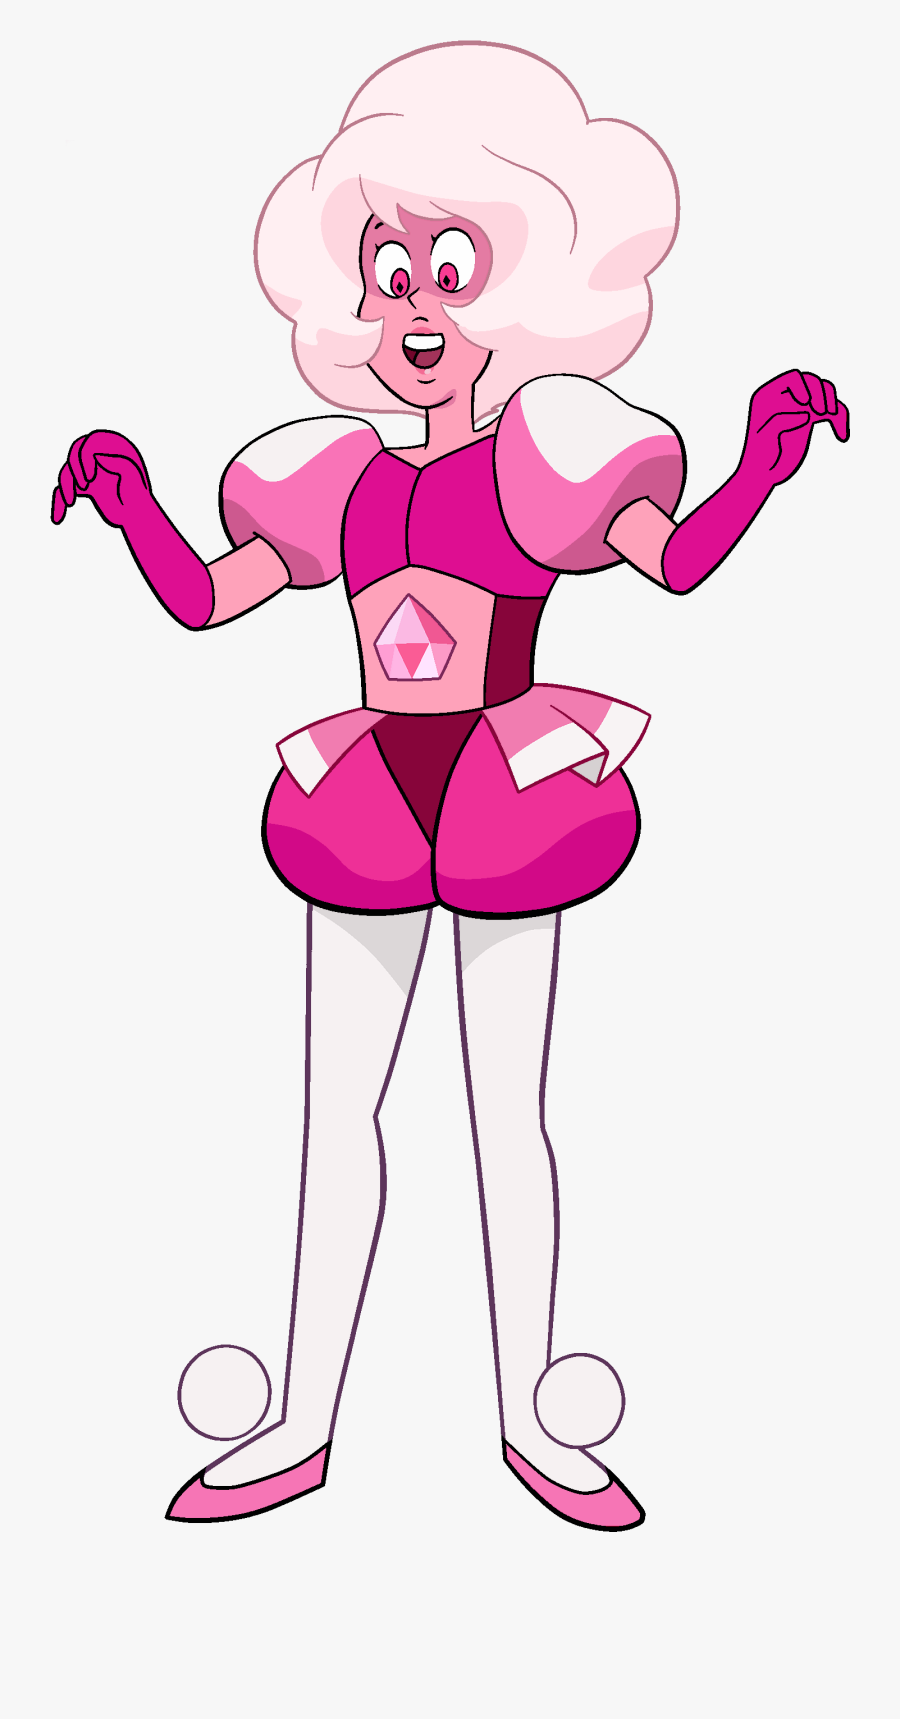 Transparent Diamon Png - Pink Diamond Steven Universe, Transparent Clipart